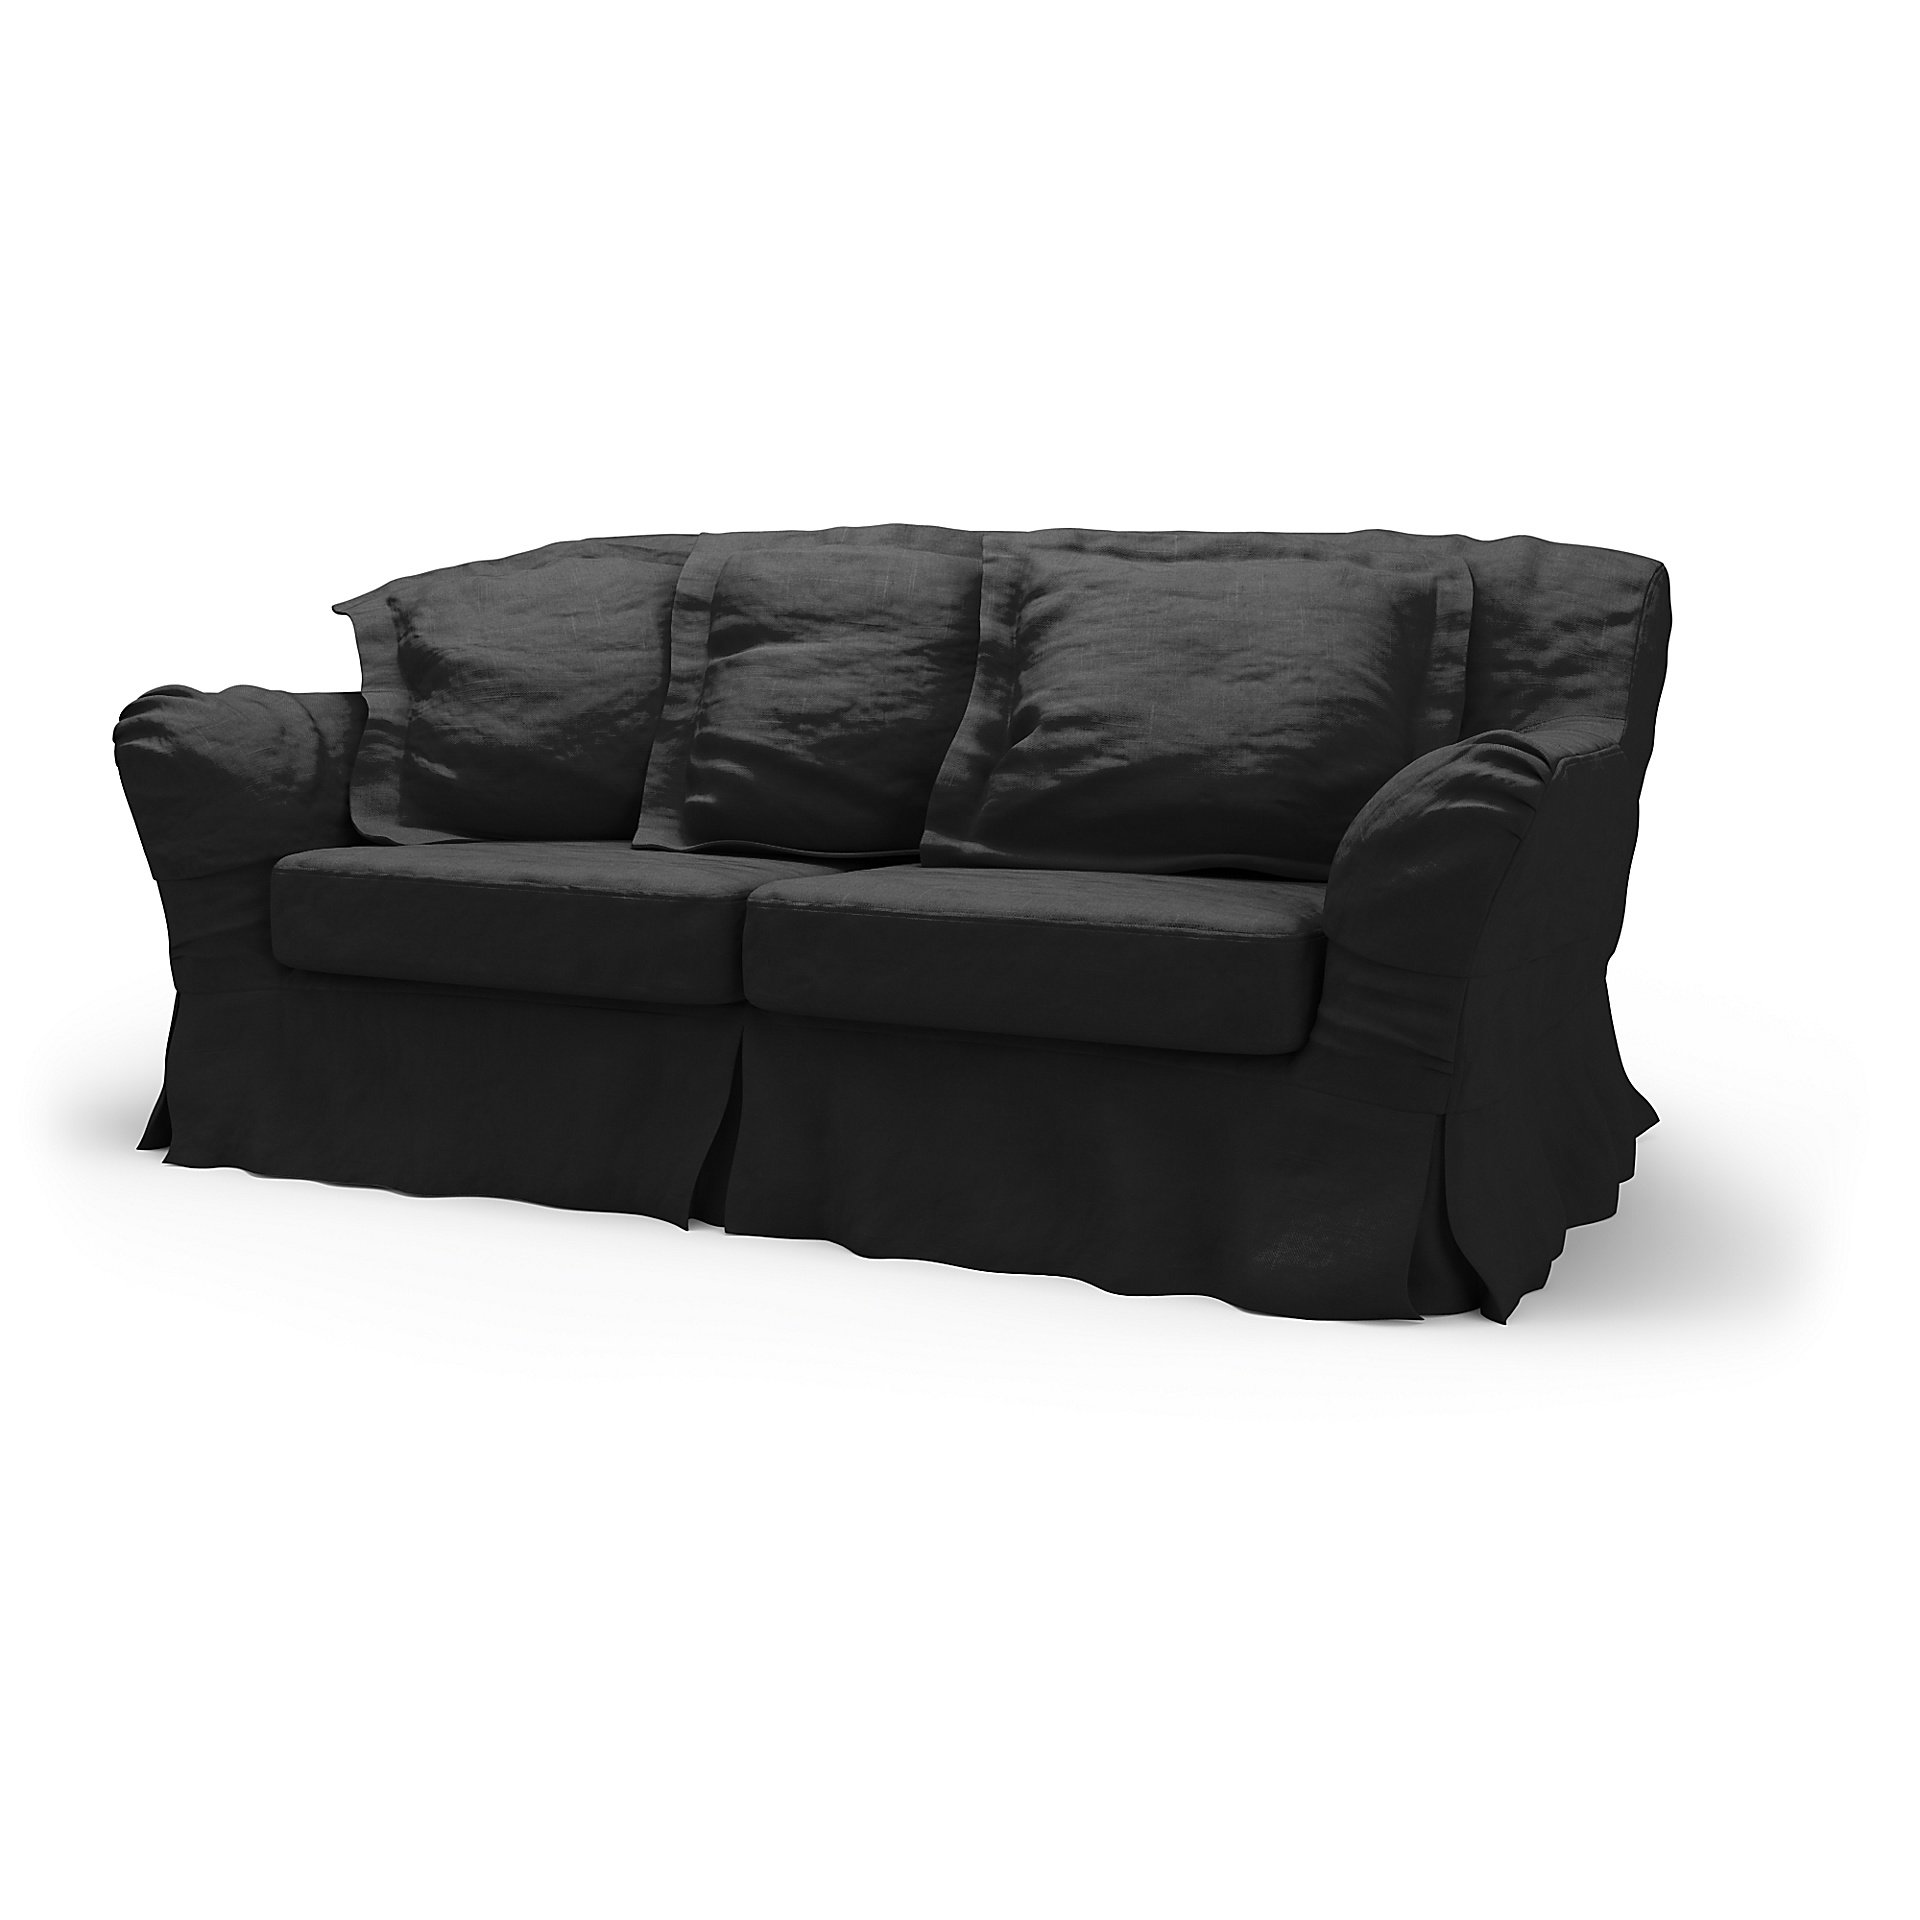 IKEA - Tomelilla 2 Seater Sofa Cover, Black, Velvet - Bemz